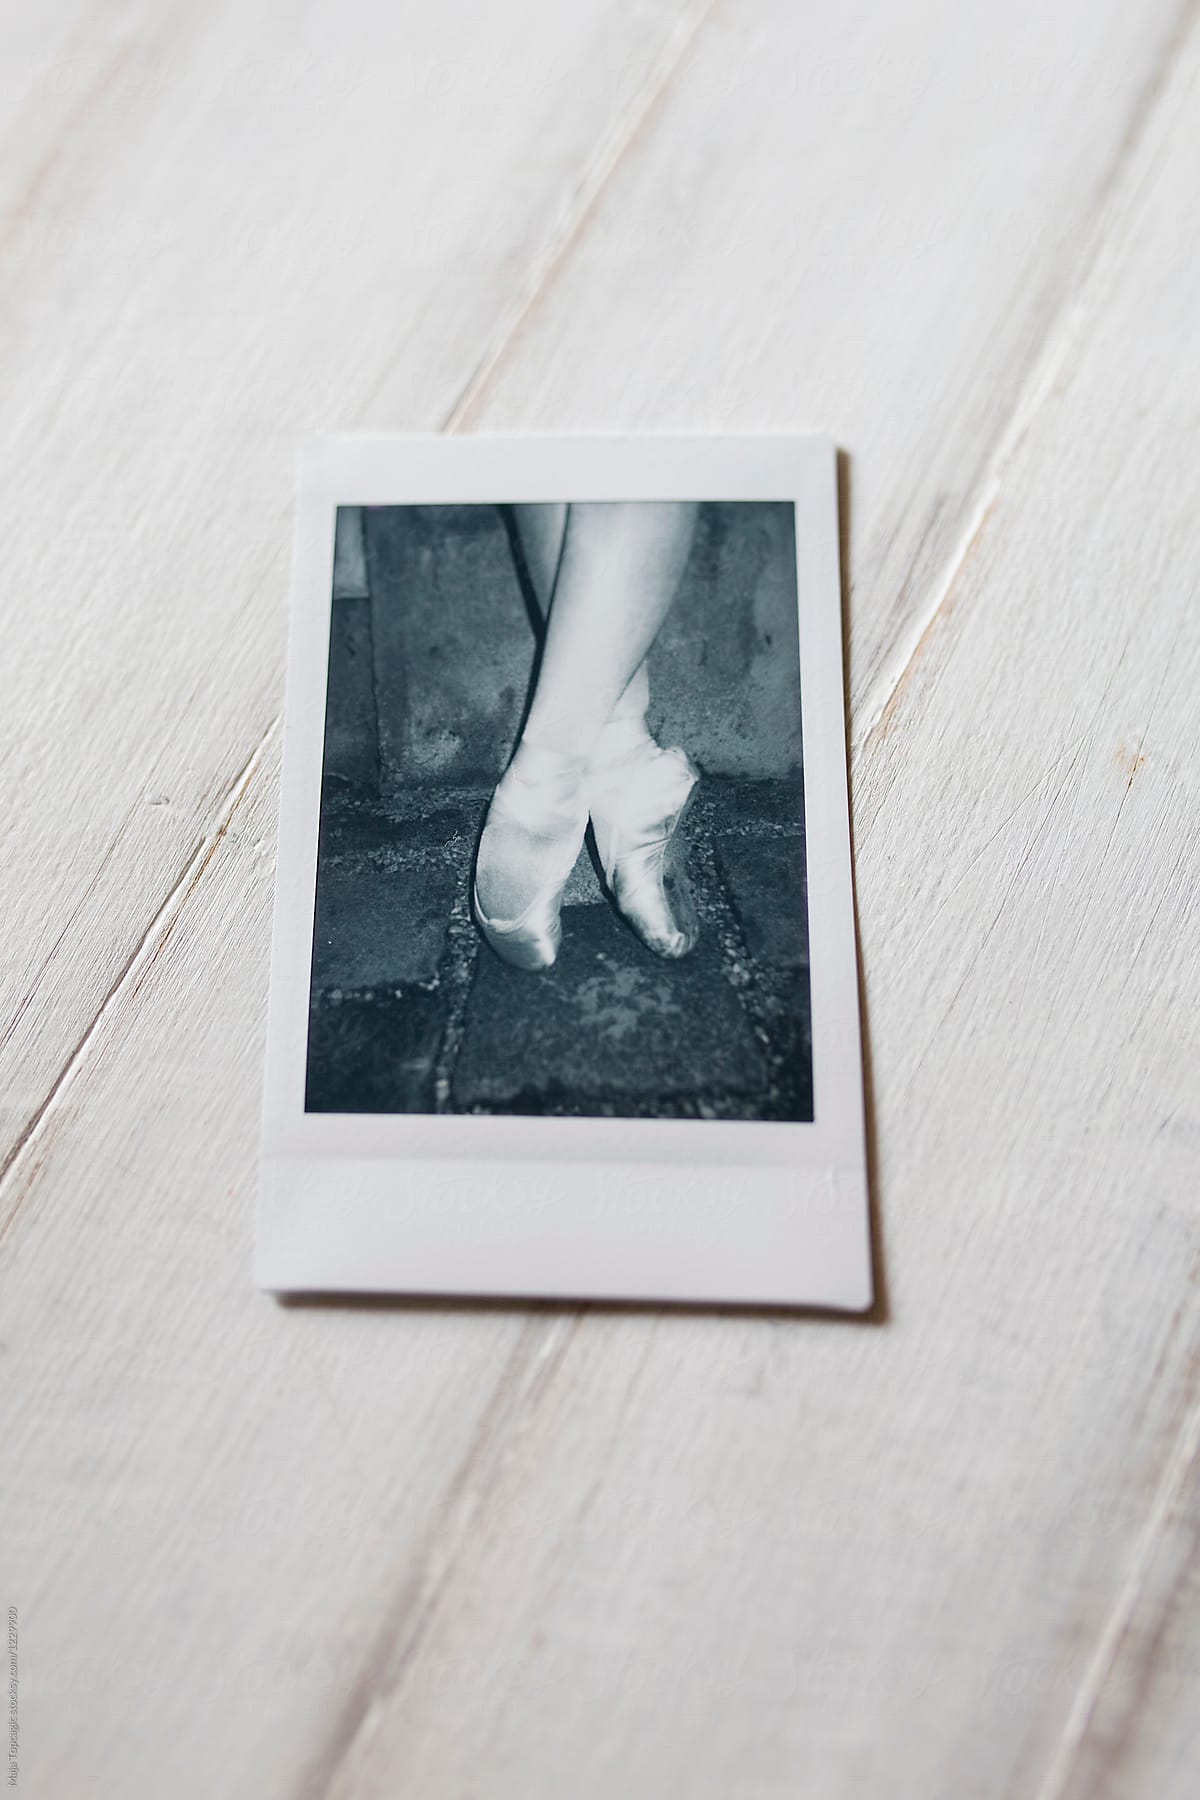 Polaroids of a dancing ballerina